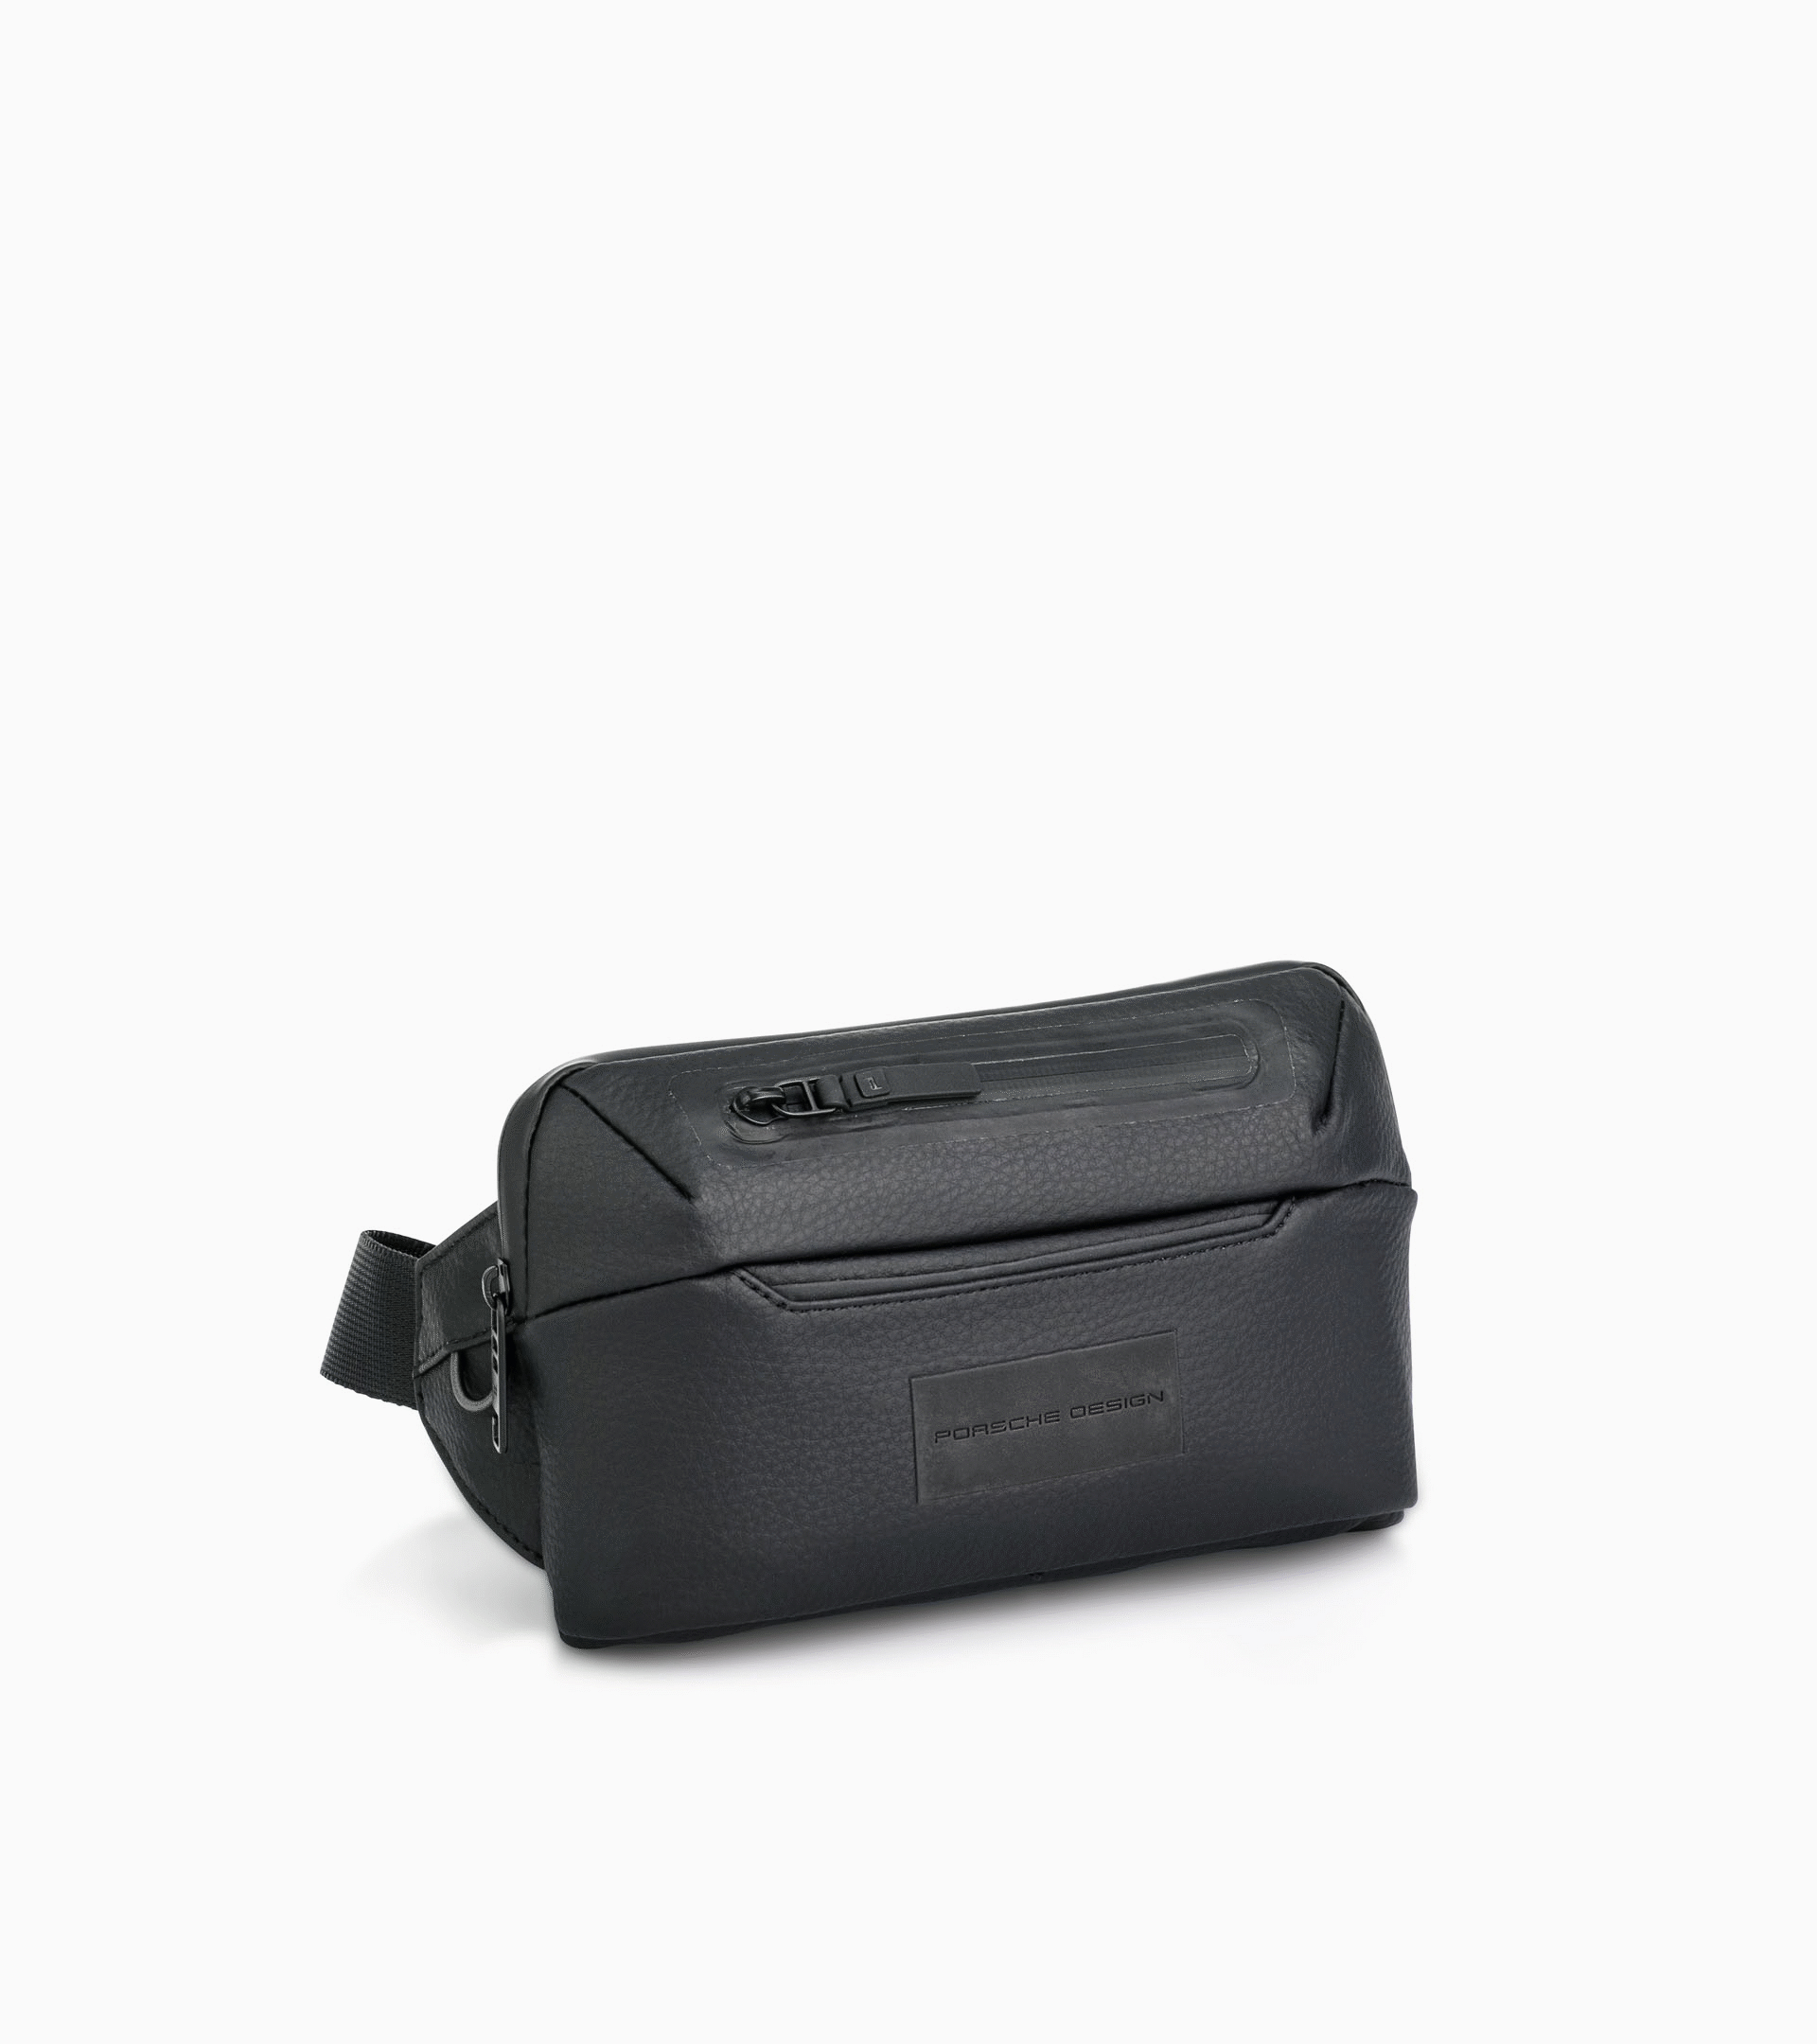 Urban Eco RL Belt Bag black - Men's Shoulder Bag - Practical ...